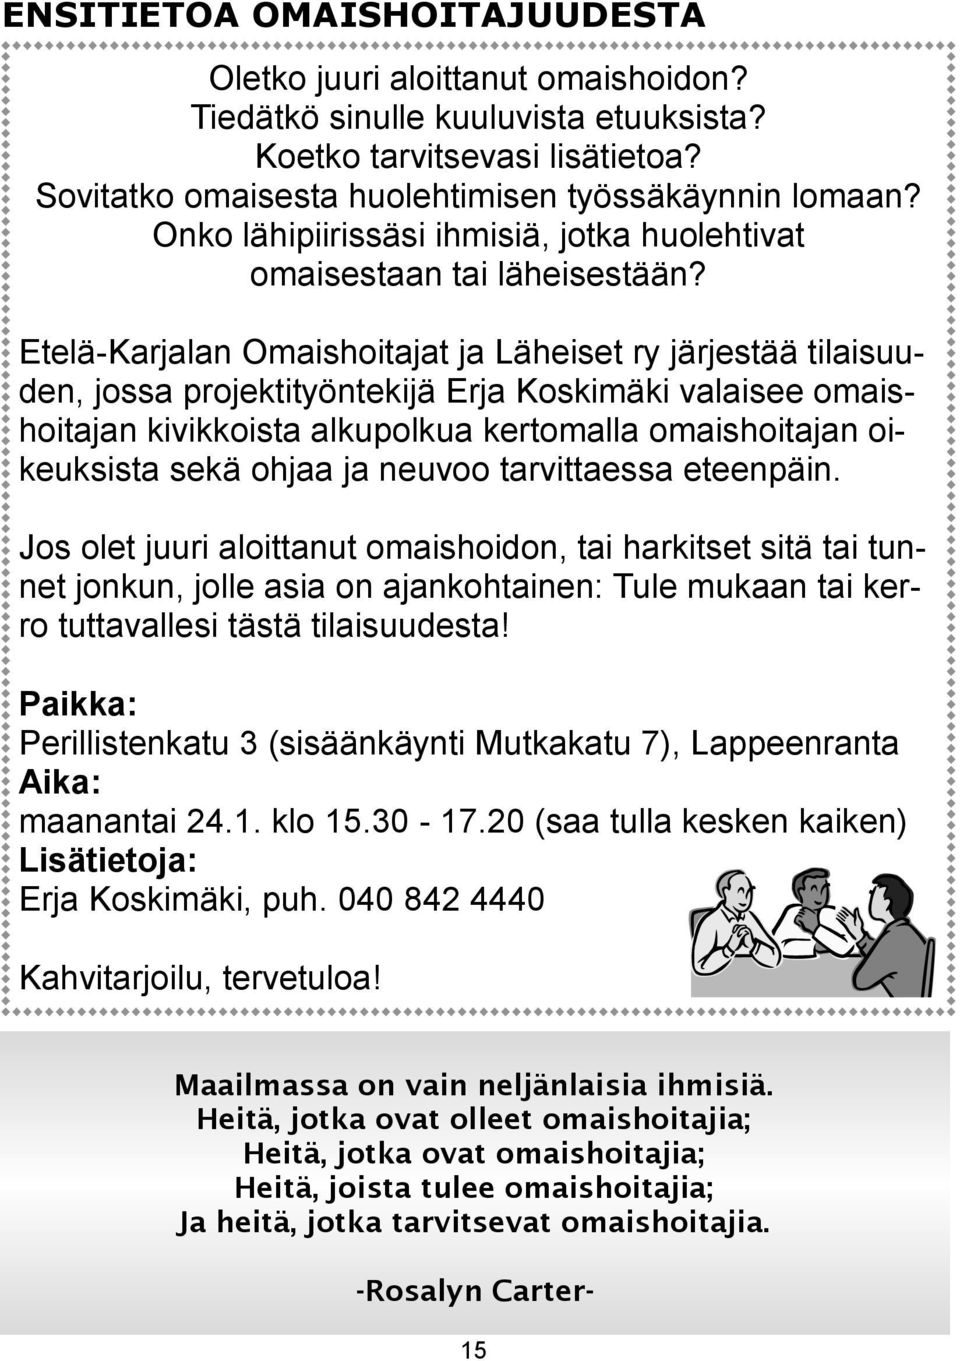 Etelä-Karjalan Omaishoitajat ja Läheiset ry järjestää tilaisuuden, jossa projektityöntekijä Erja Koskimäki valaisee omaishoitajan kivikkoista alkupolkua kertomalla omaishoitajan oikeuksista sekä